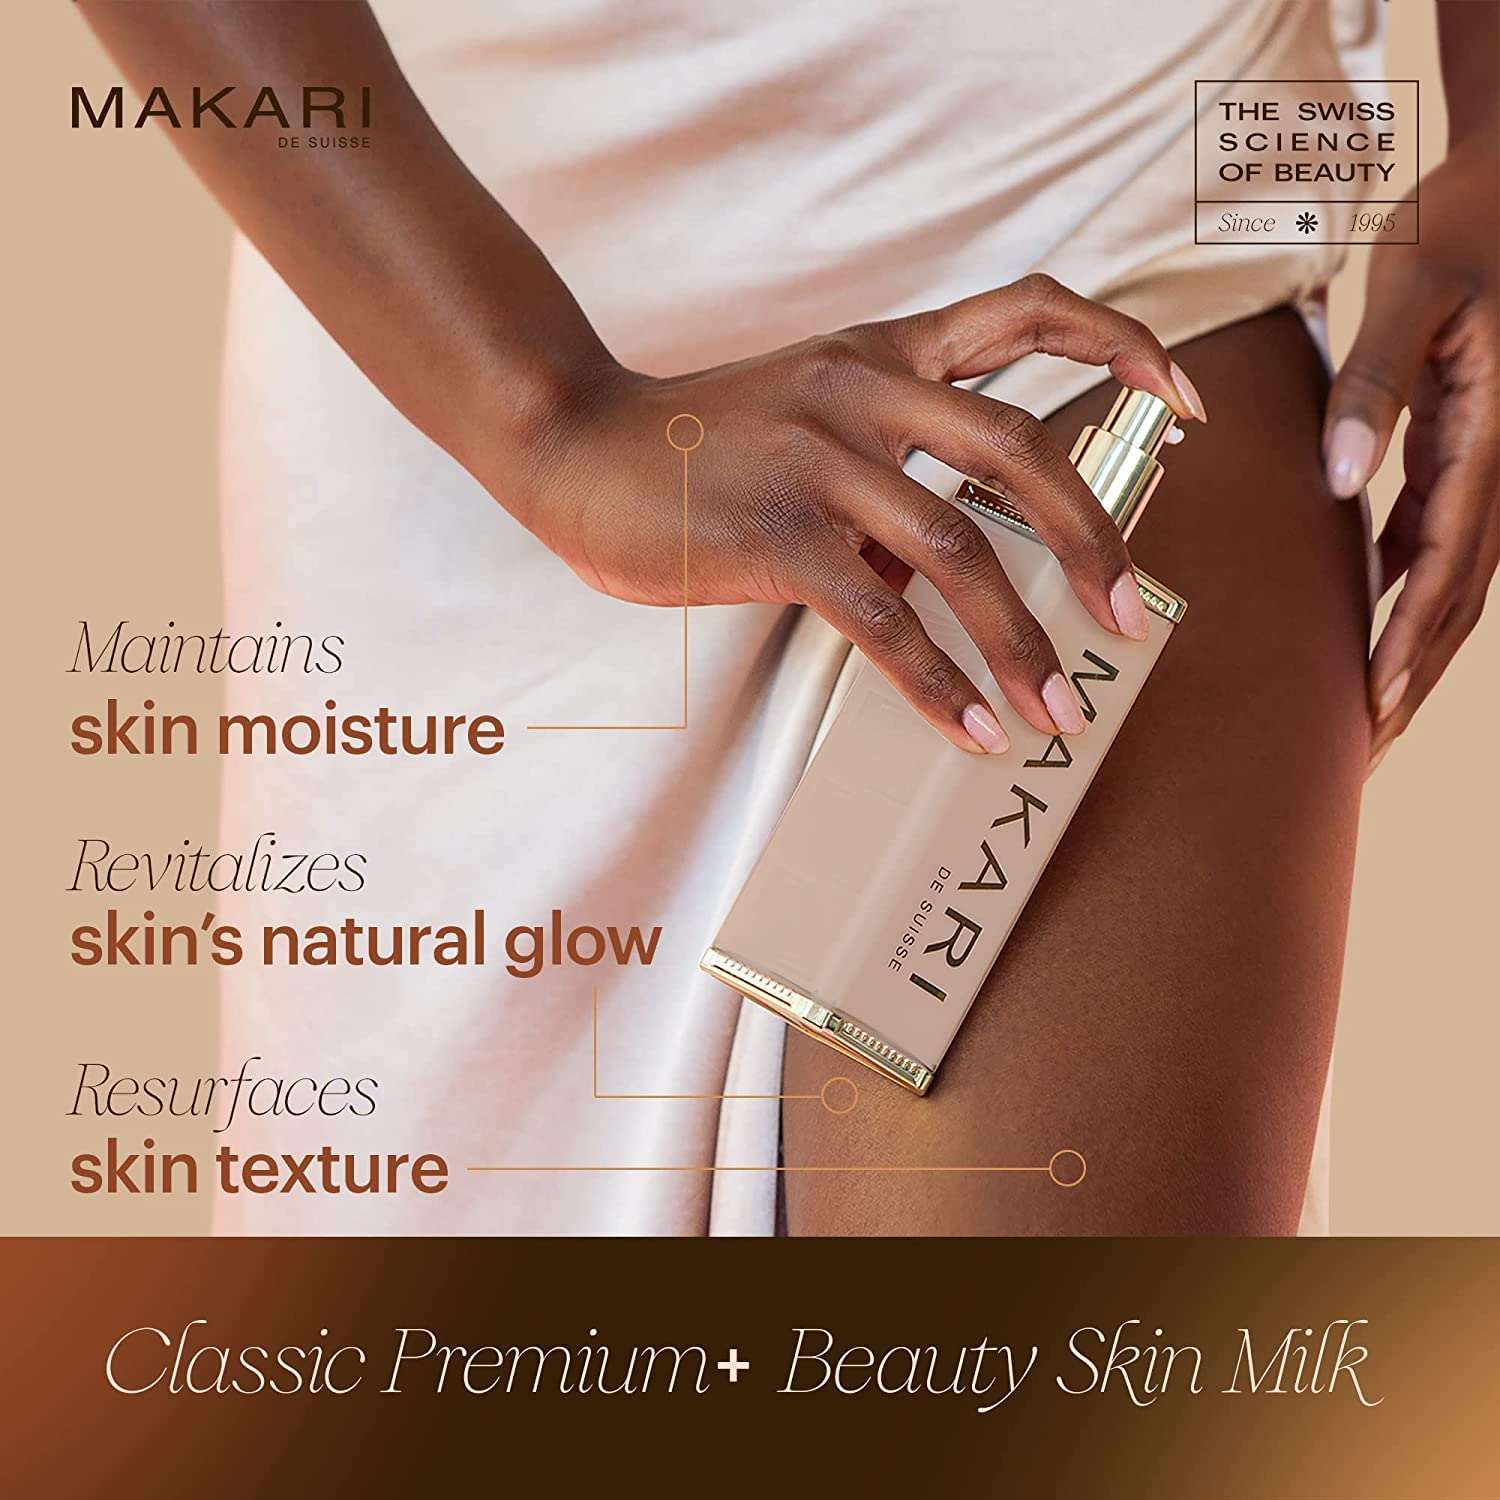 Makari Body Brightening Beauty Milk Premium Plus